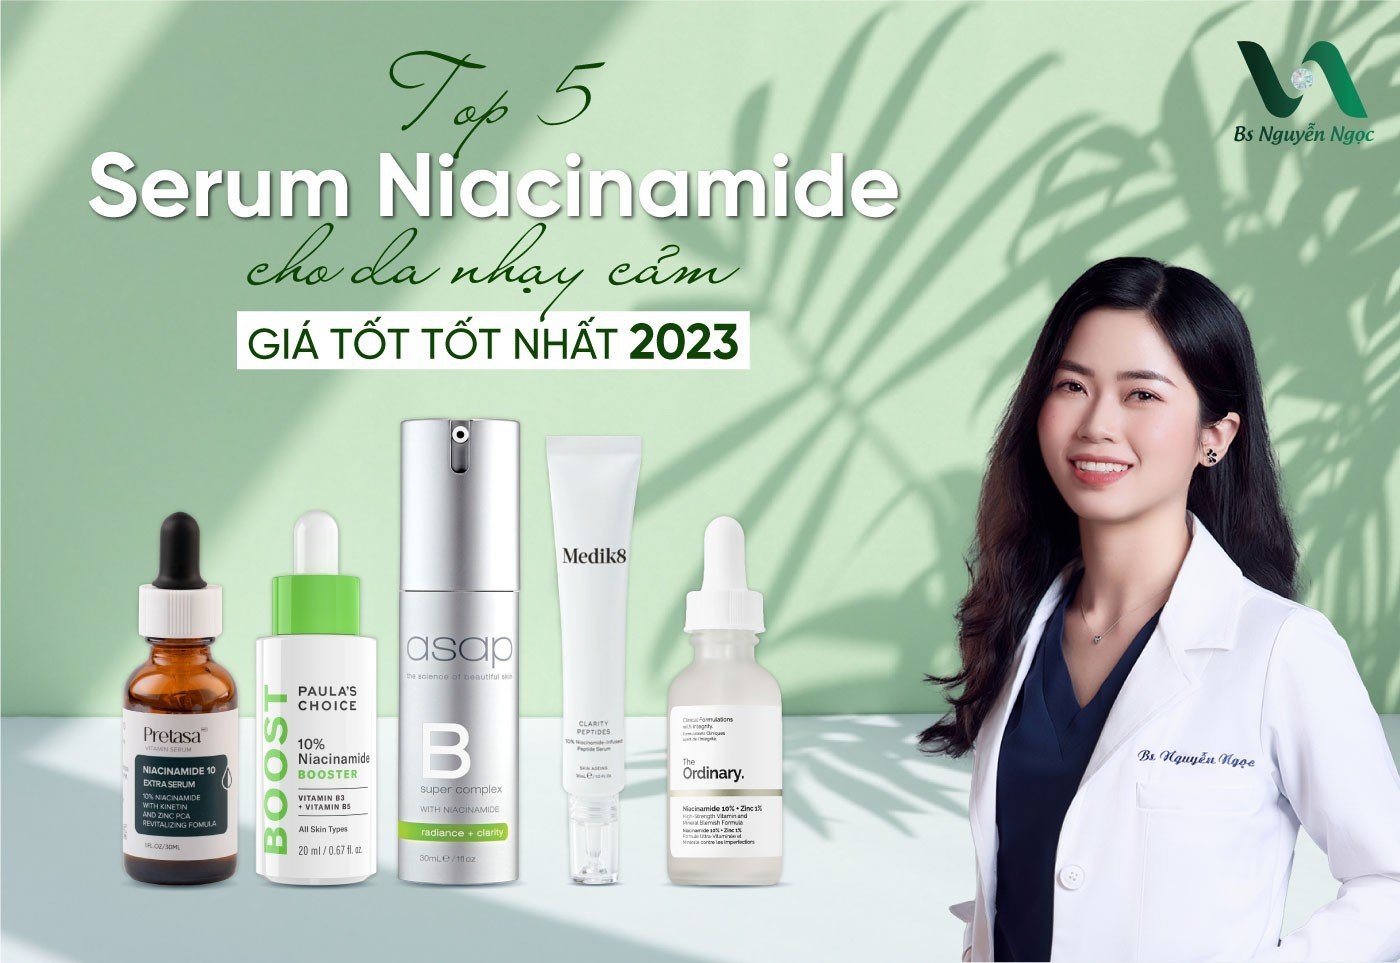 Top 5 Serum Niacinamide cho da nhạy cảm giá tốt tốt nhất 2023